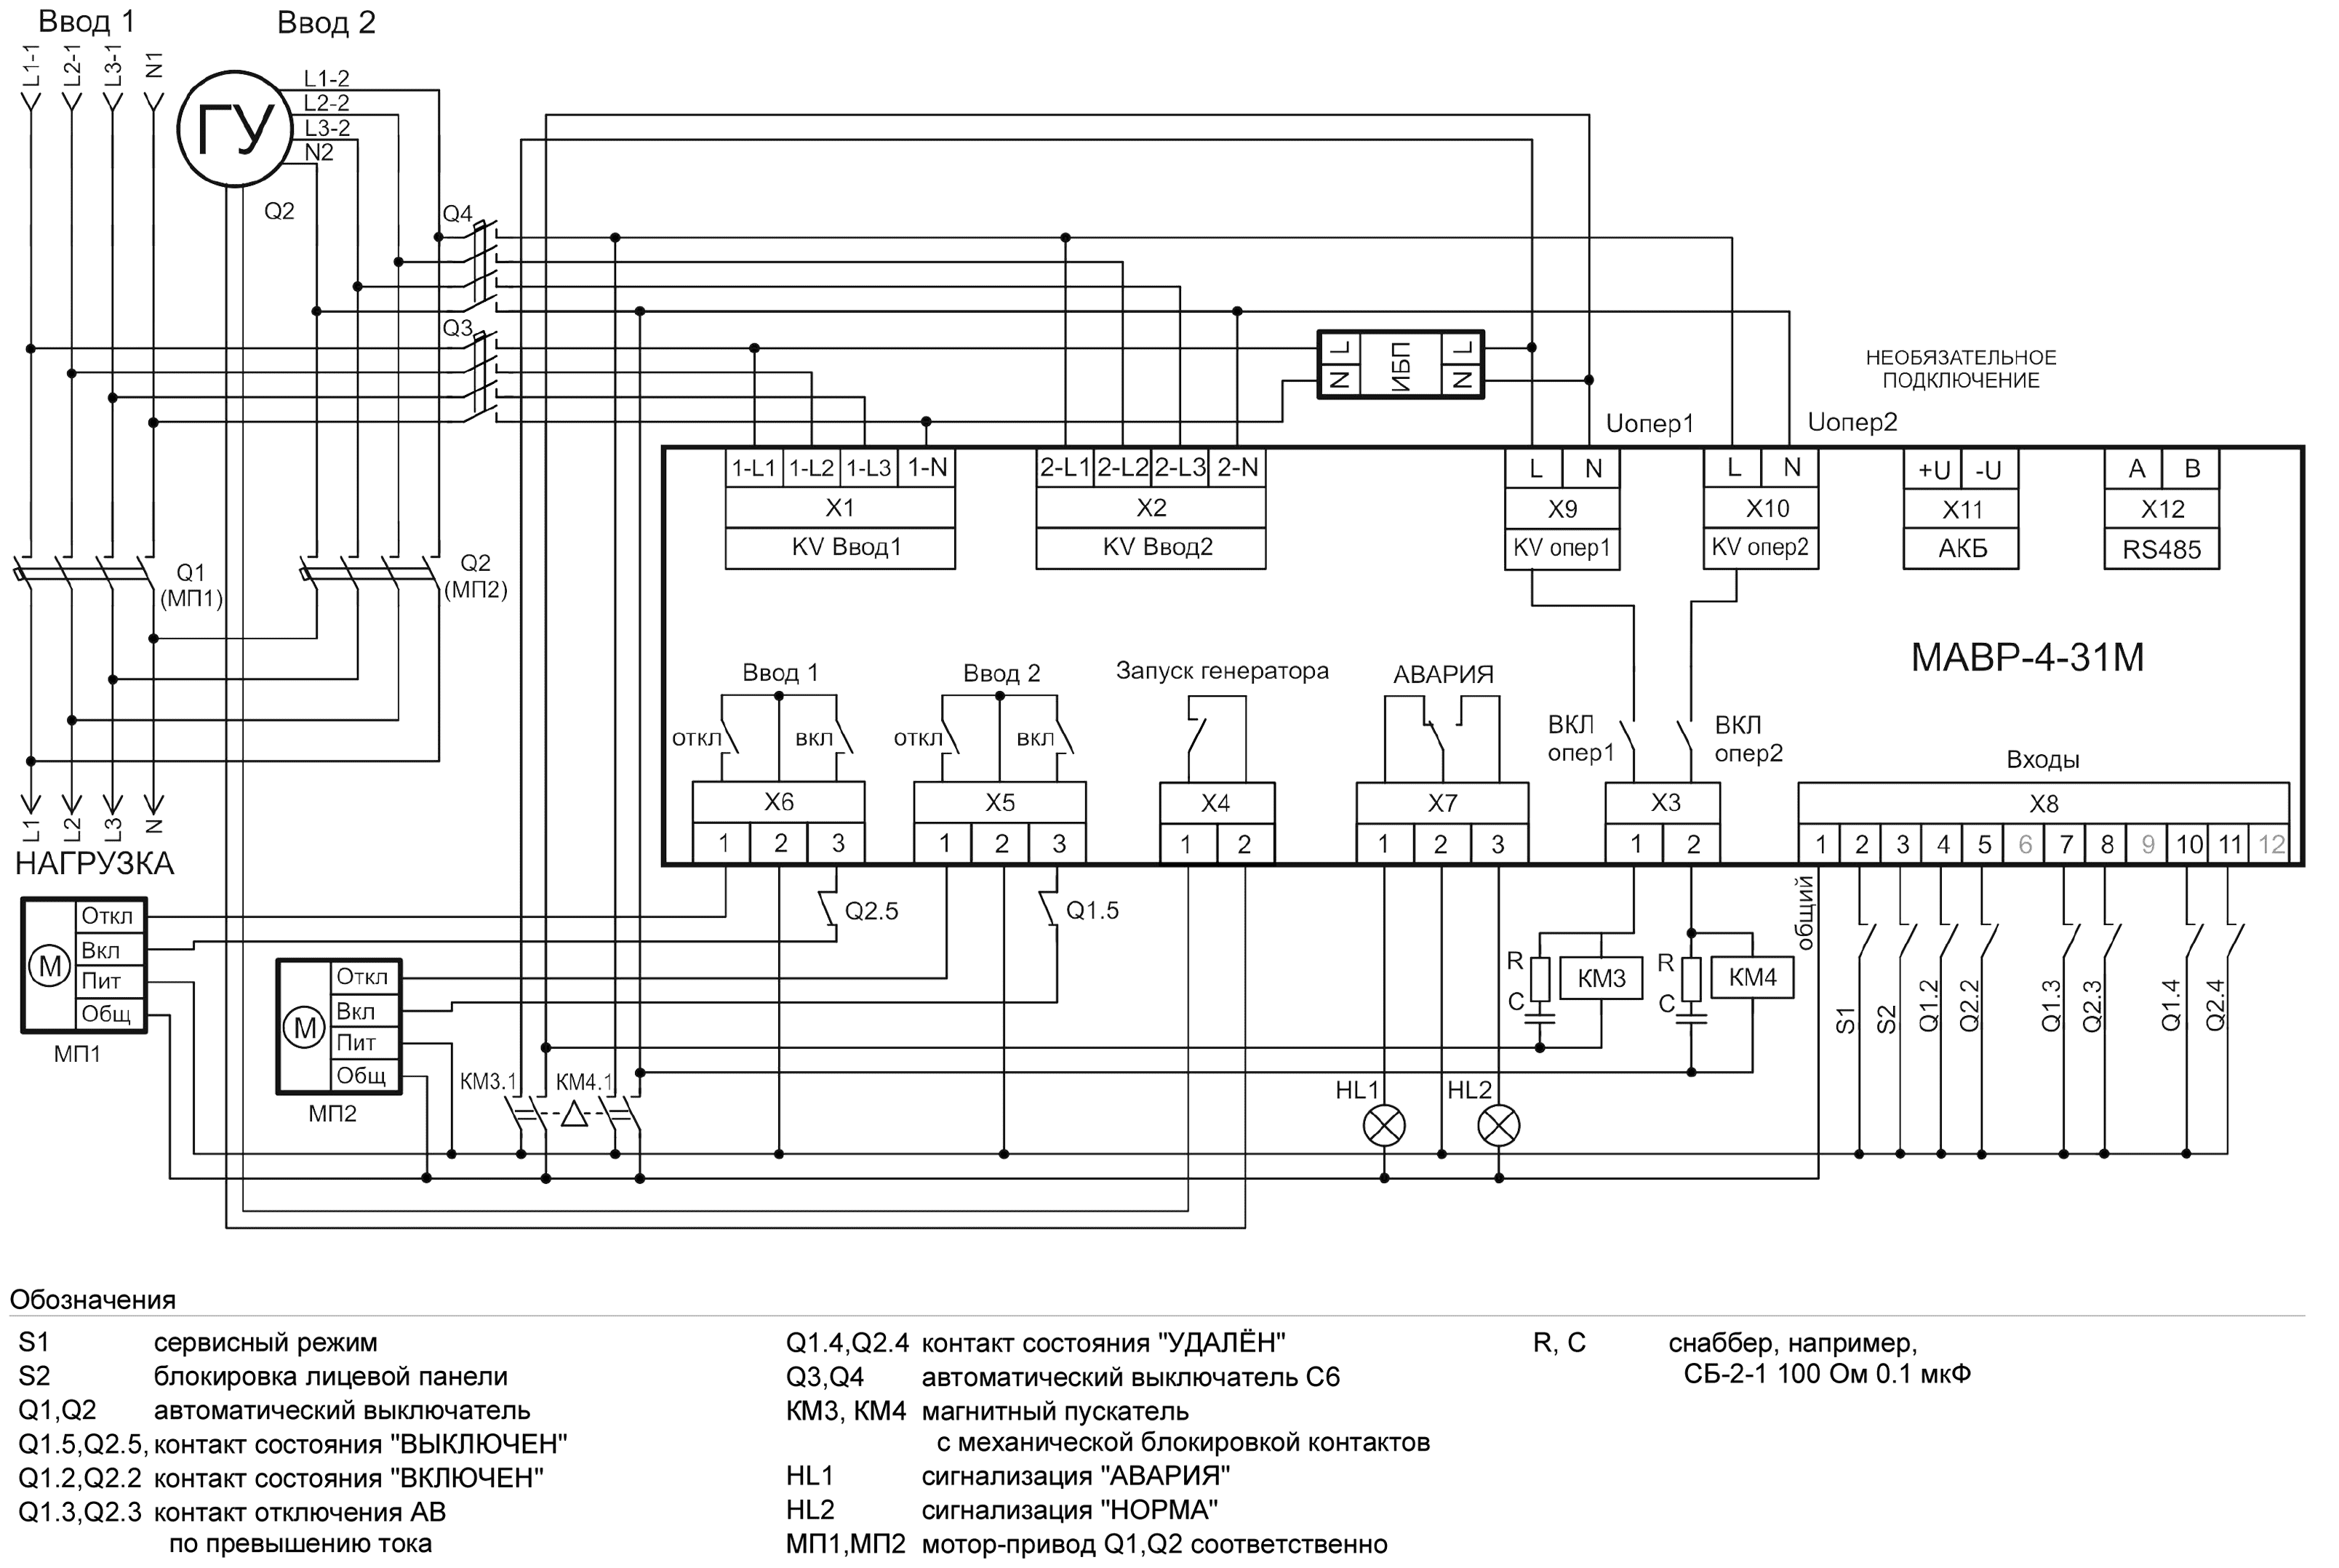 Схема АВР на автоматических выключателях с мотор-приводом 3-х фазный ввод и 3-фазный генератор с ИБП для питания АВР МАВР-4-31М